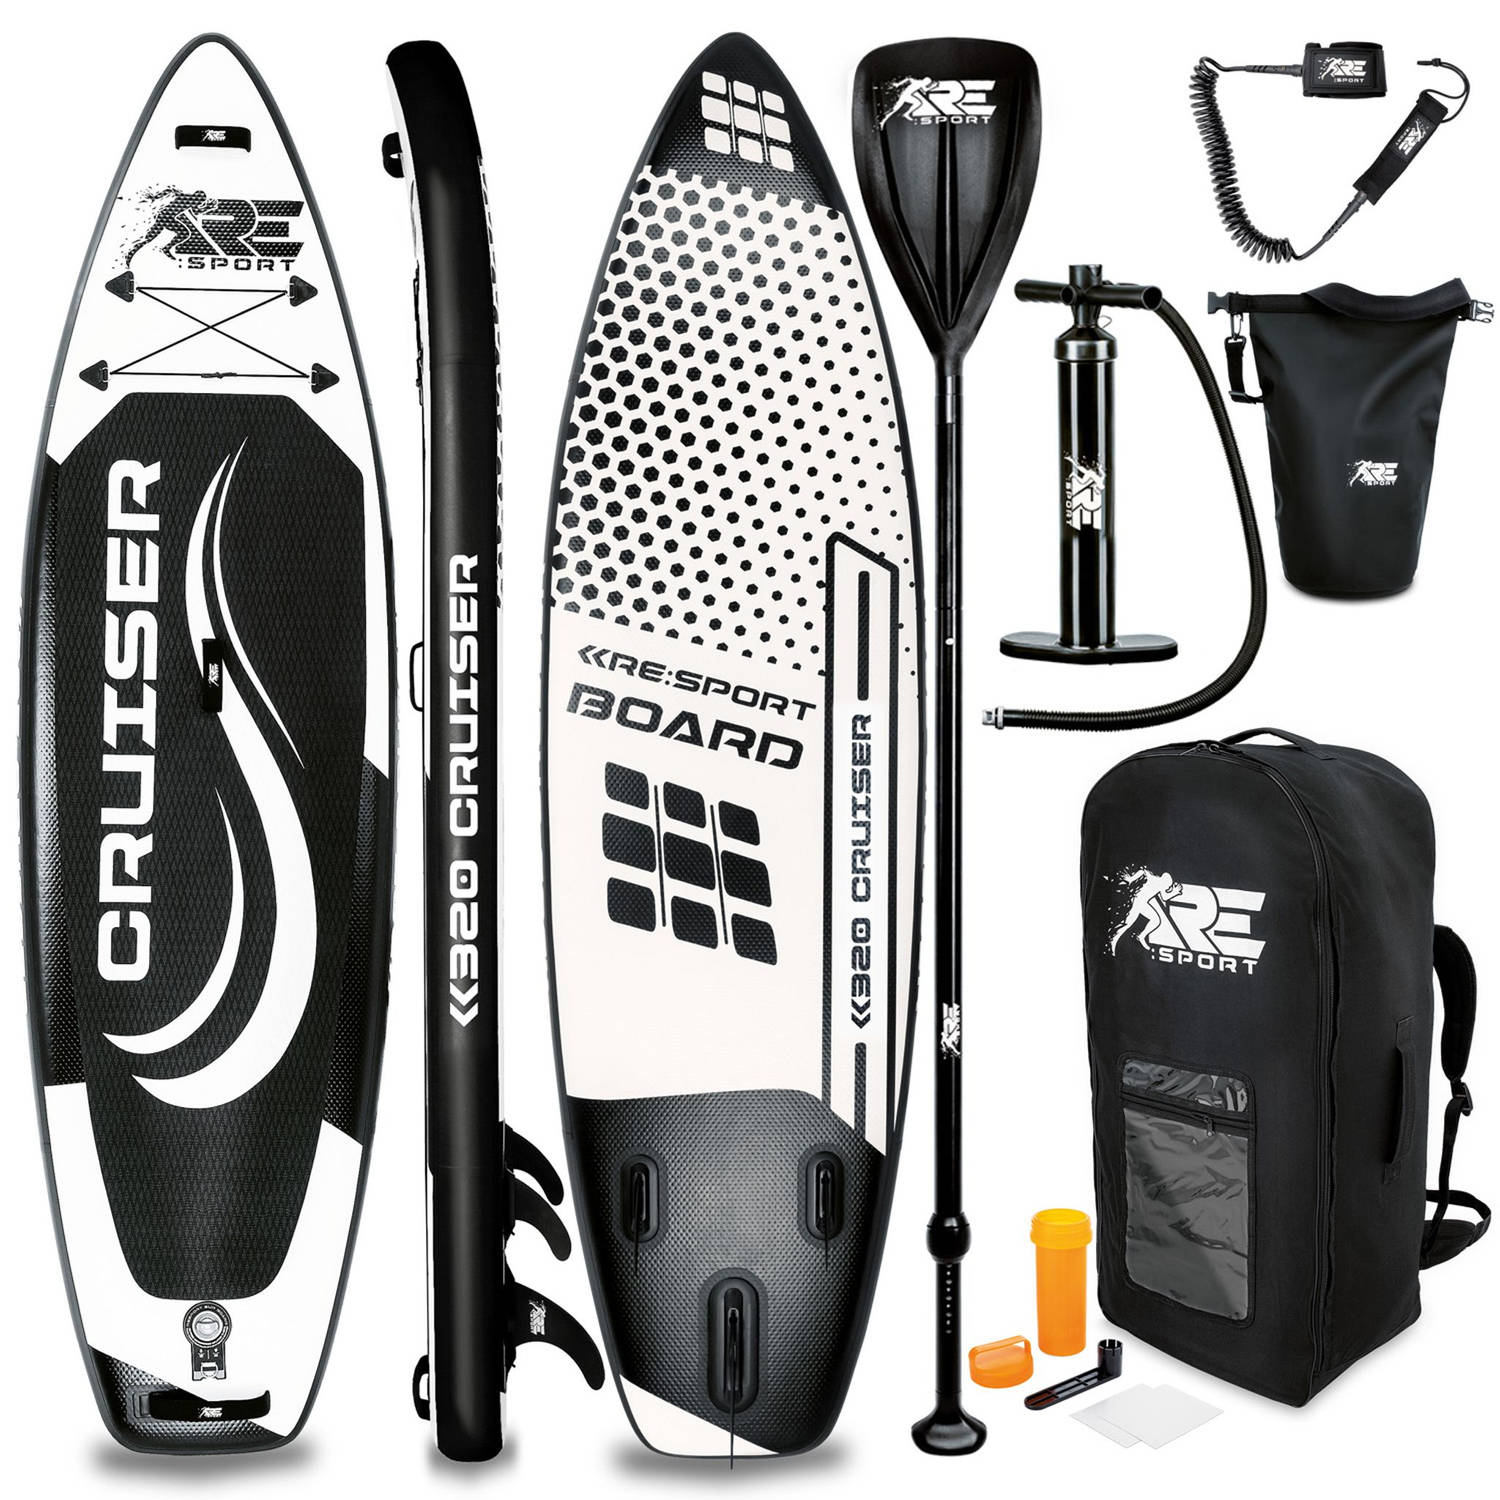 Re: Sport-sup Board 320 Cm Zwart-supboard- Opblaasbaar- Stand Up Paddle Set- Surfboard --Paddling Pr